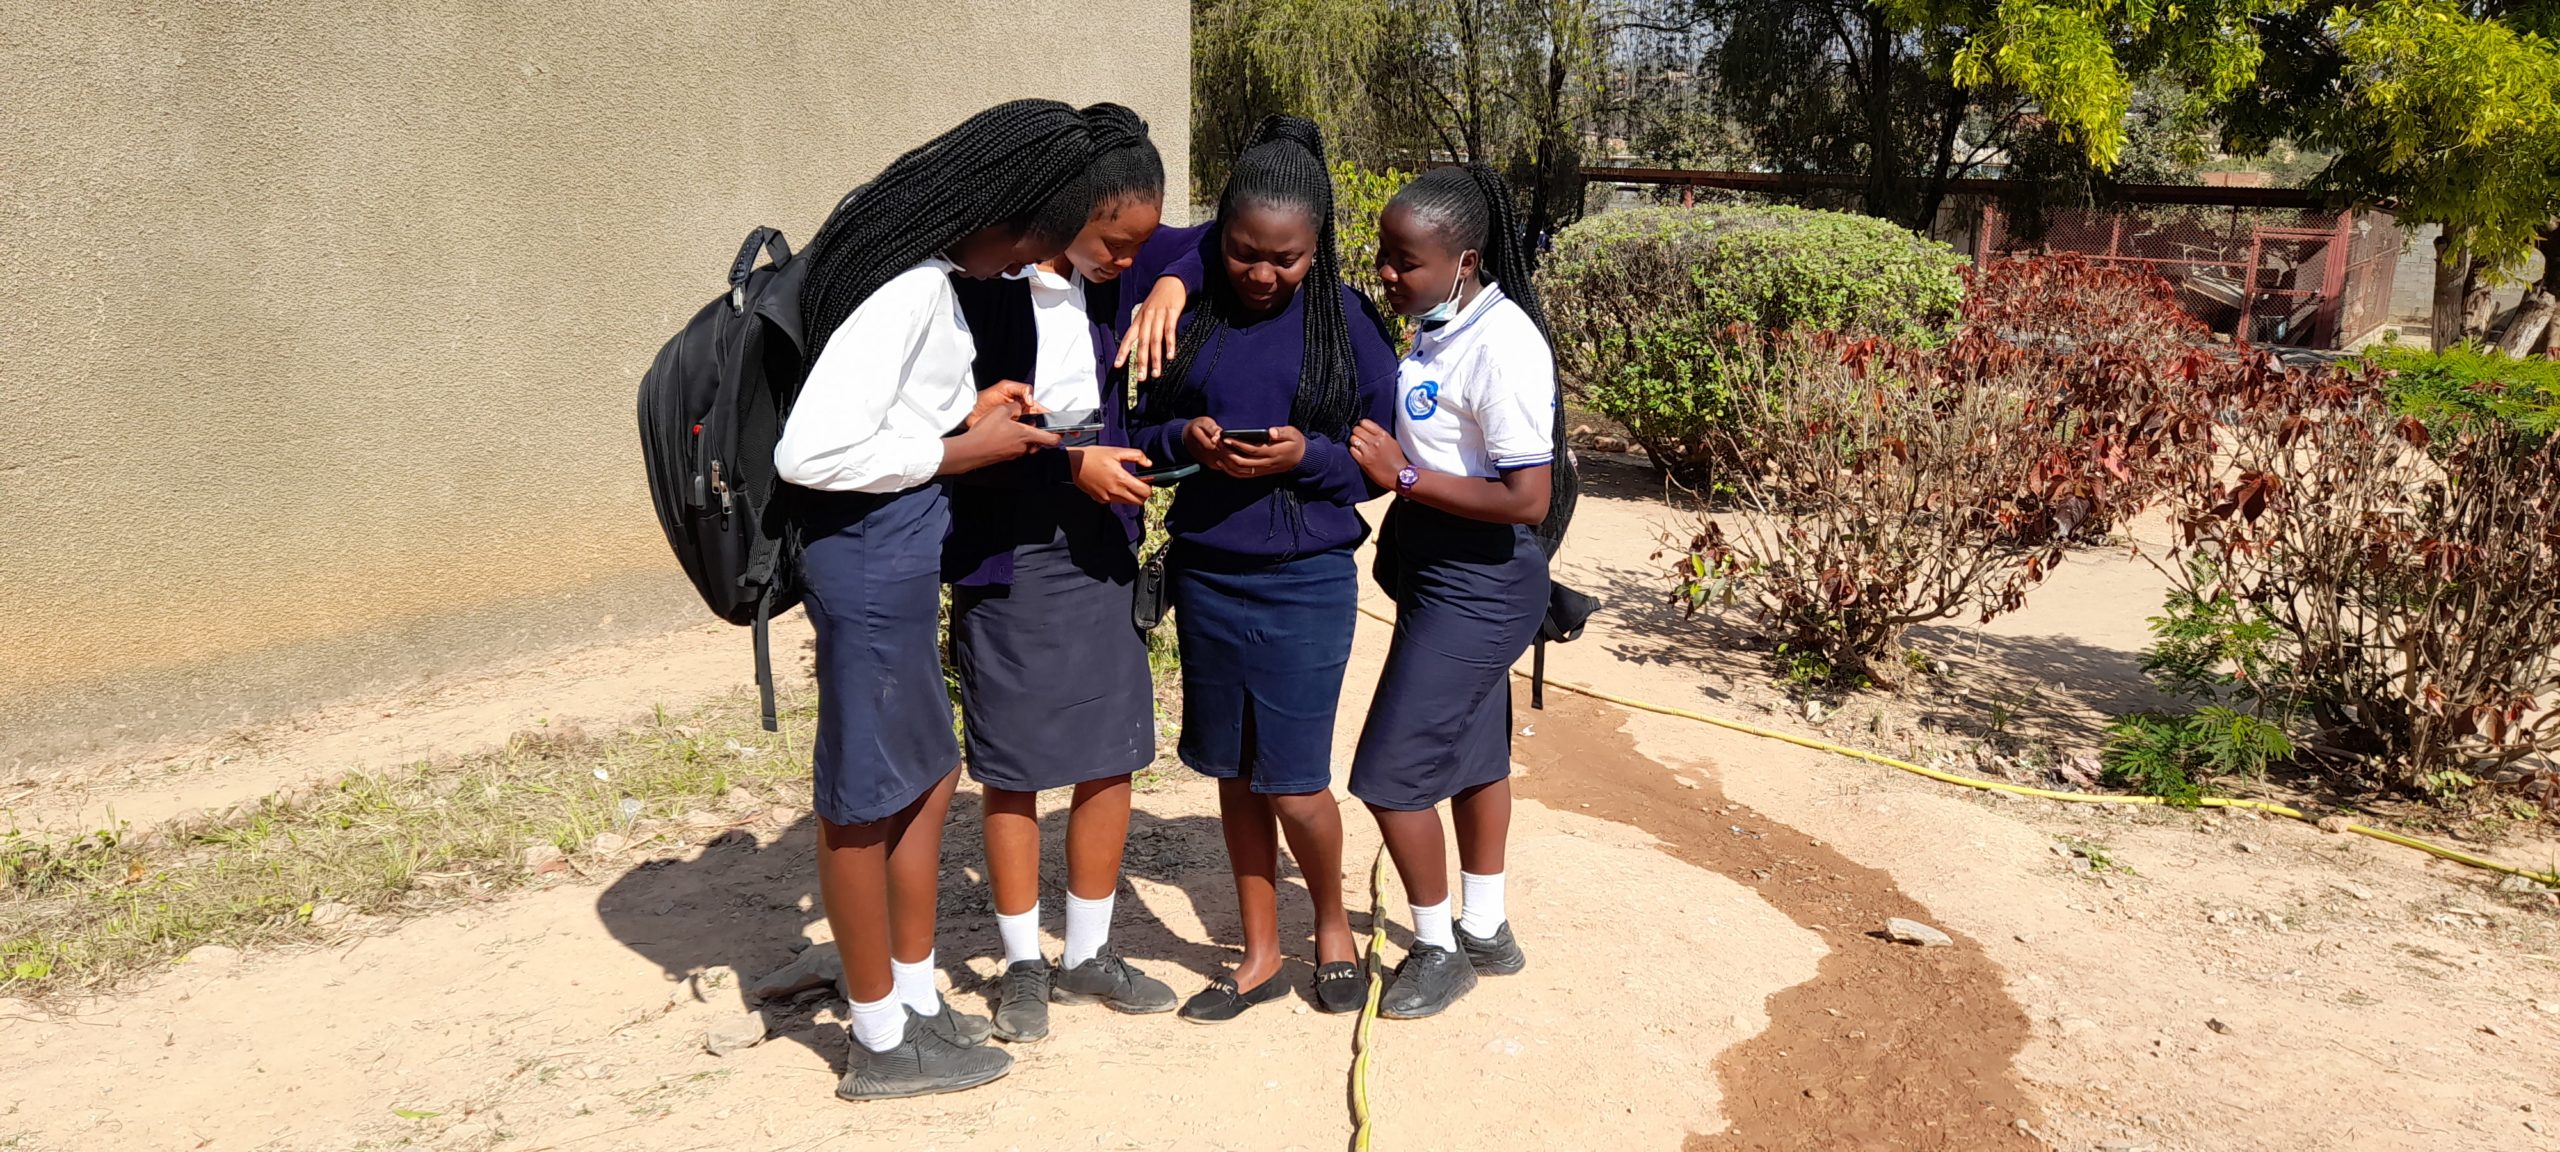 Les élèves consultent le téléphone dans la cour de l'école. Kipushi, 2021 @ponabana